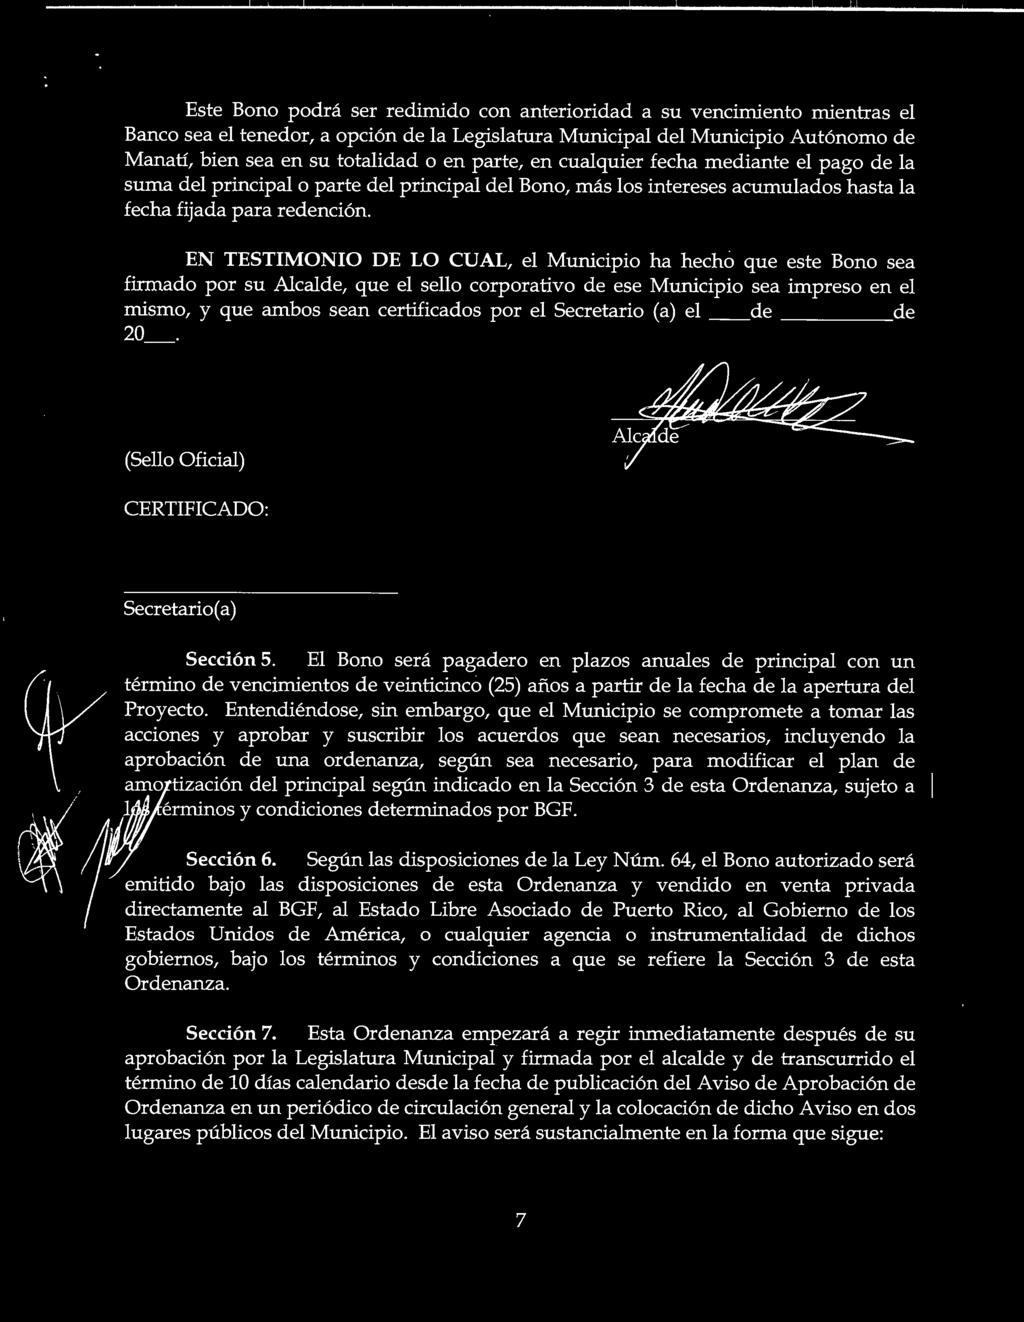 EN TESTIMONIO DE LO CUAL, el Municipio ha hecho que este Bono sea firmado por su Alcalde, que el sello corporativo de ese Municipio sea impreso en el mismo, y que ambos sean certificados por el